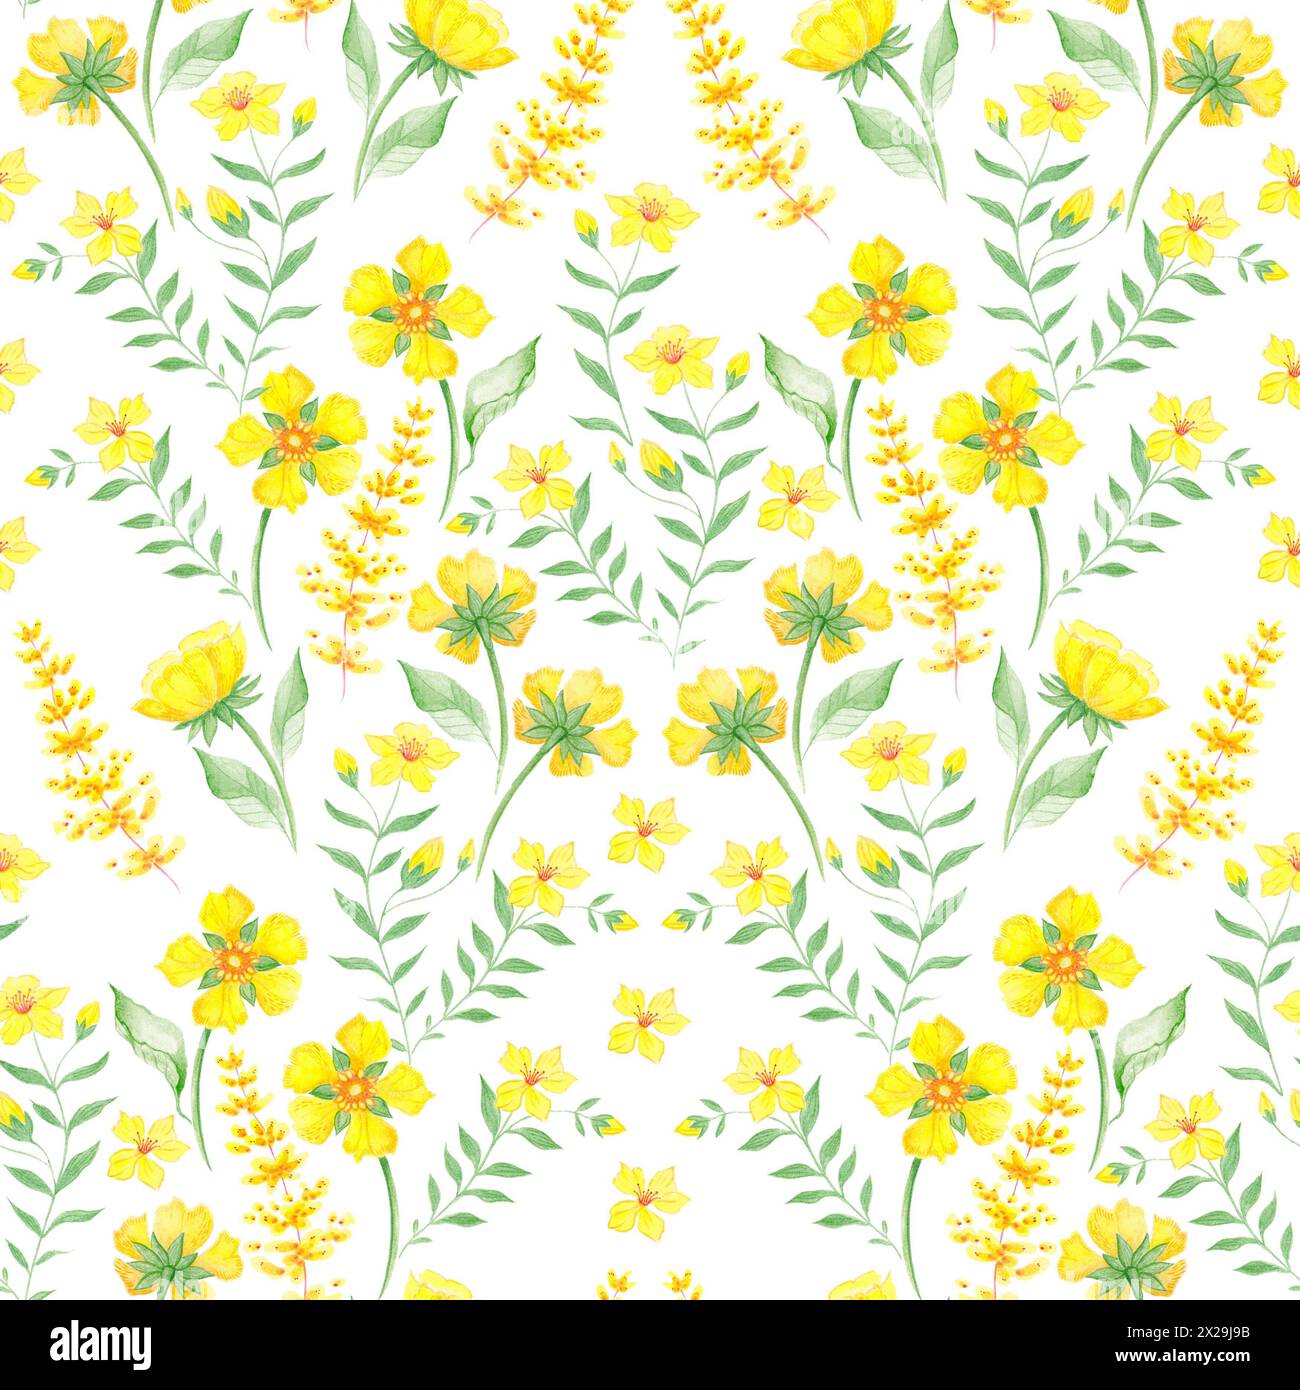 Illustrazione a motivi botanici senza cuciture con rami verdi e fiori gialli su sfondo bianco. Tema primavera ed estate. Foto Stock